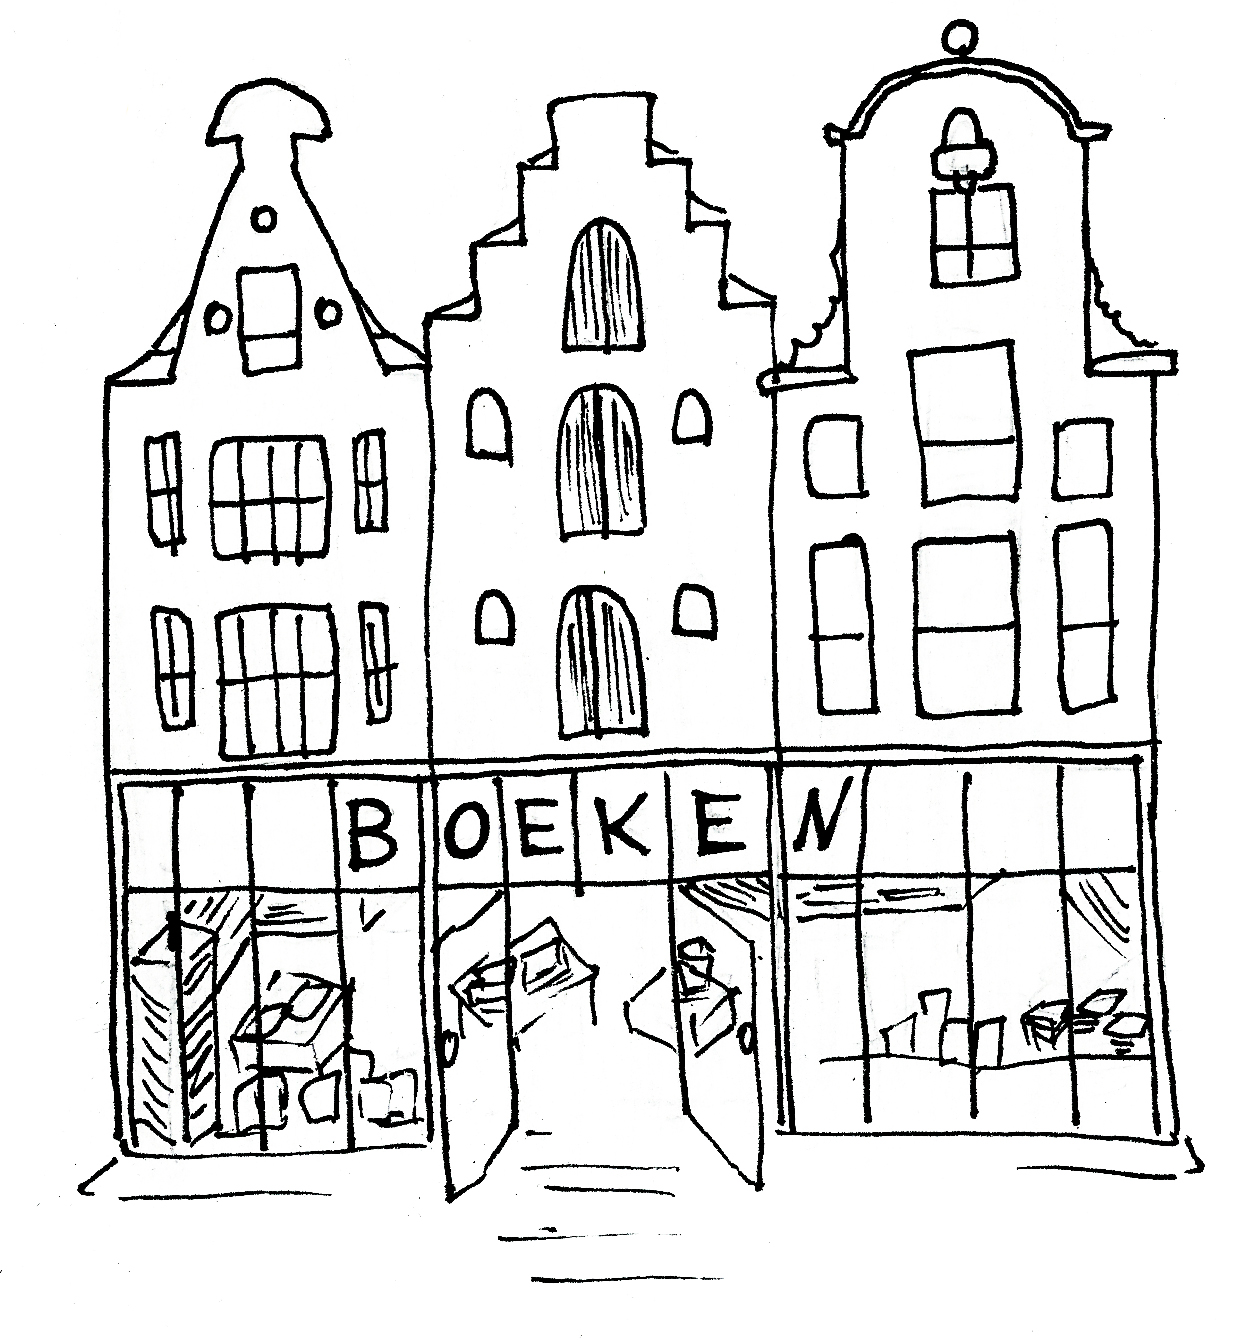 Boekwinkels @ Lauriekoek.nl